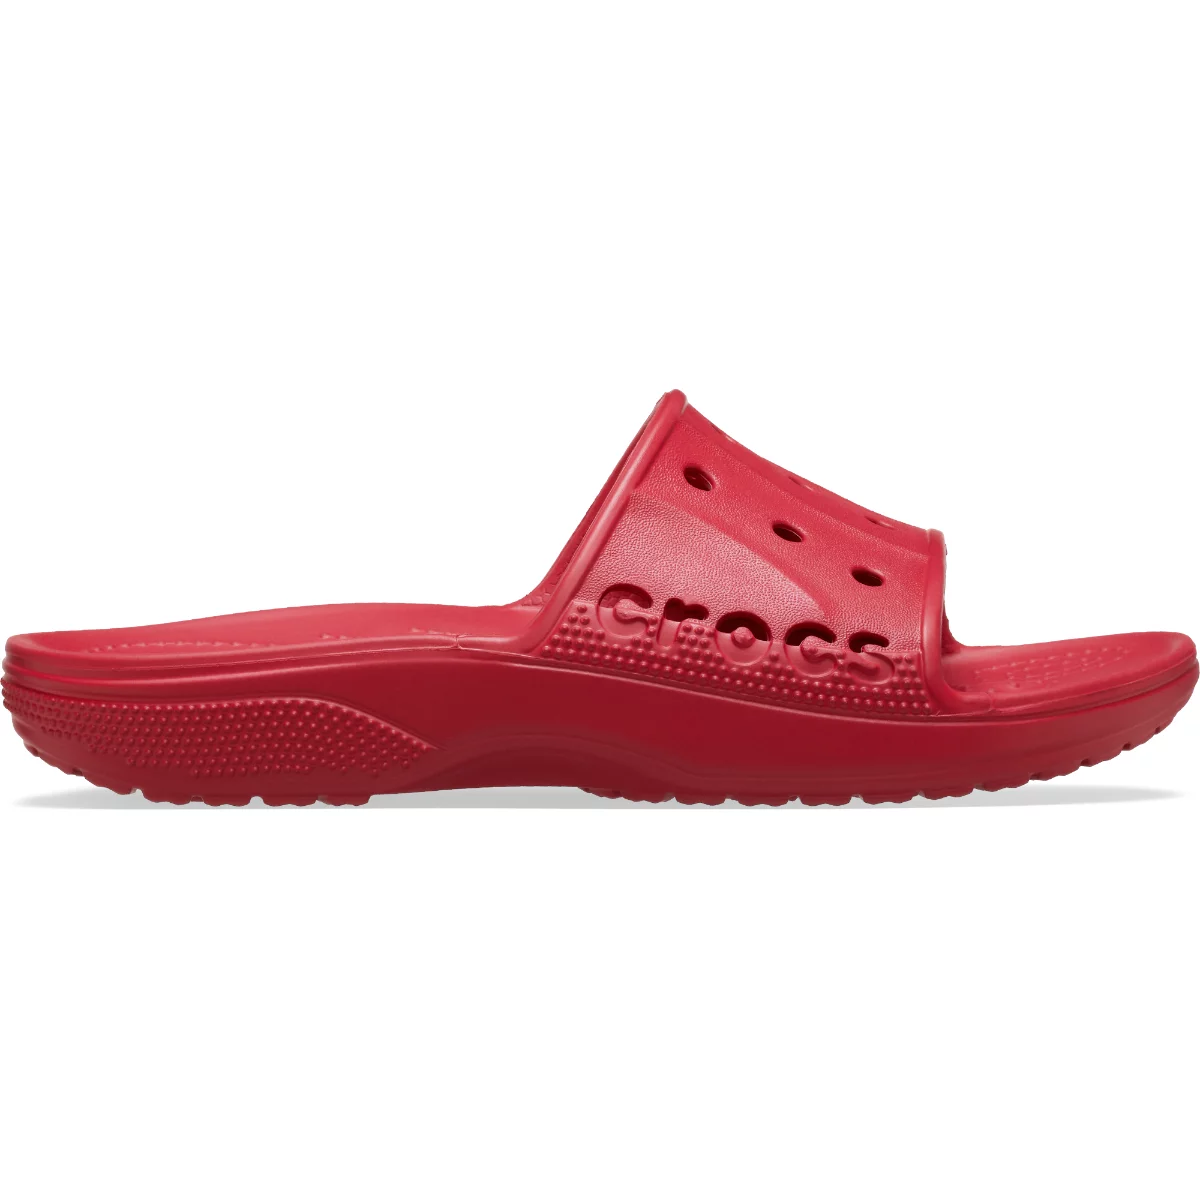 Crocs papucs Baya II Slide piros színben 43-44 méretben